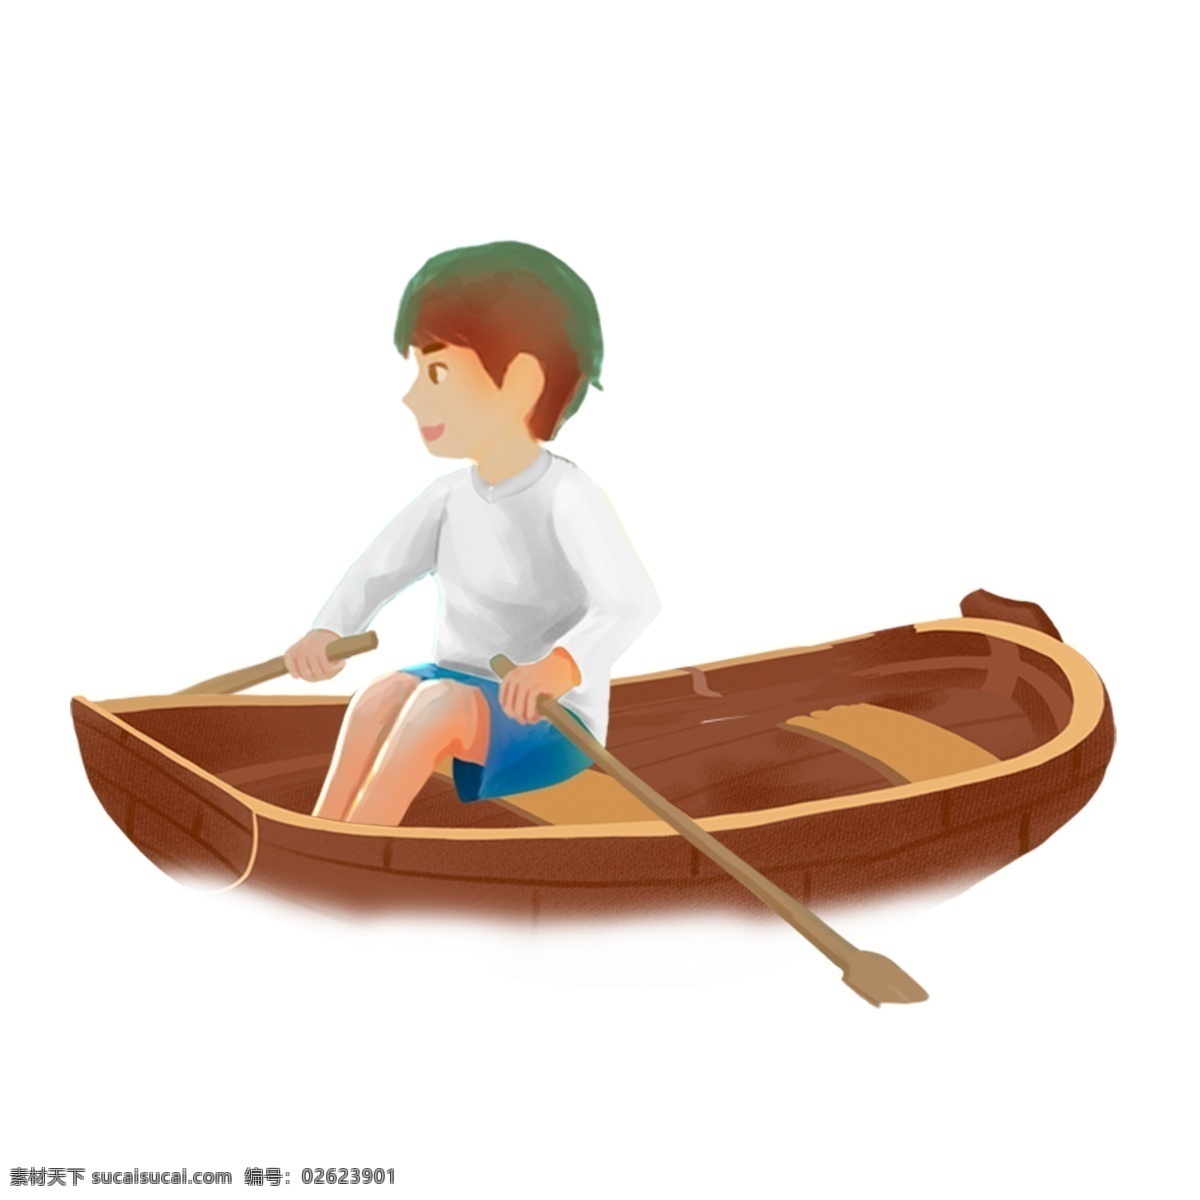 卡通 小 男孩 划船 插画 小孩 彩色 小清新 创意 手绘 元素 现代 简约 装饰 图案